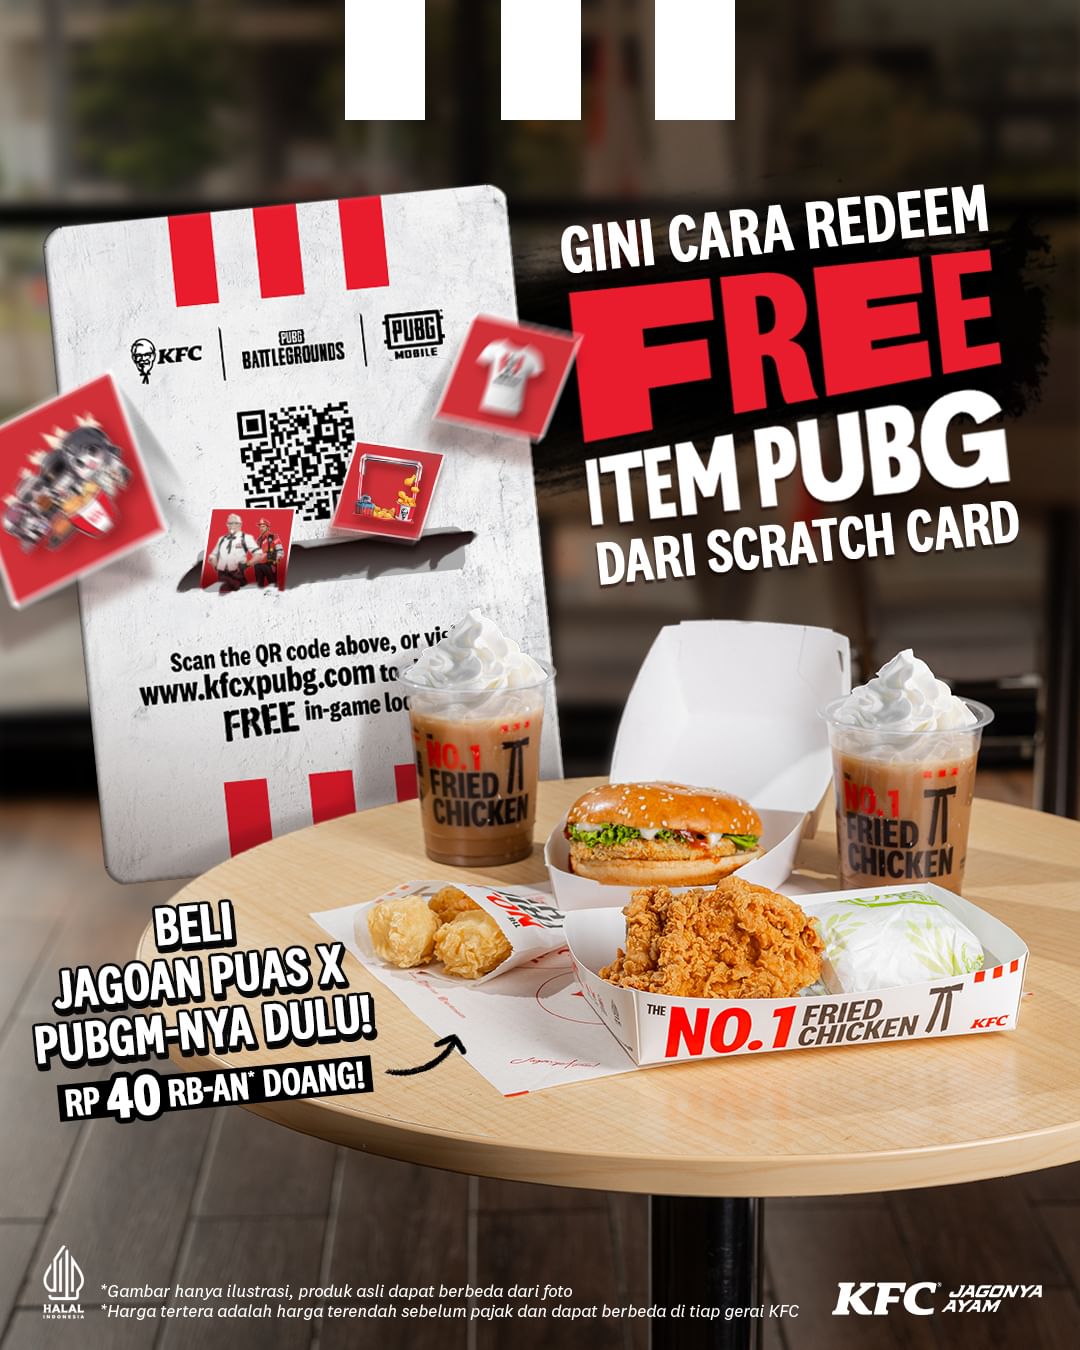 PROMO KFC GRATIS / FREE ITEM PUBGM